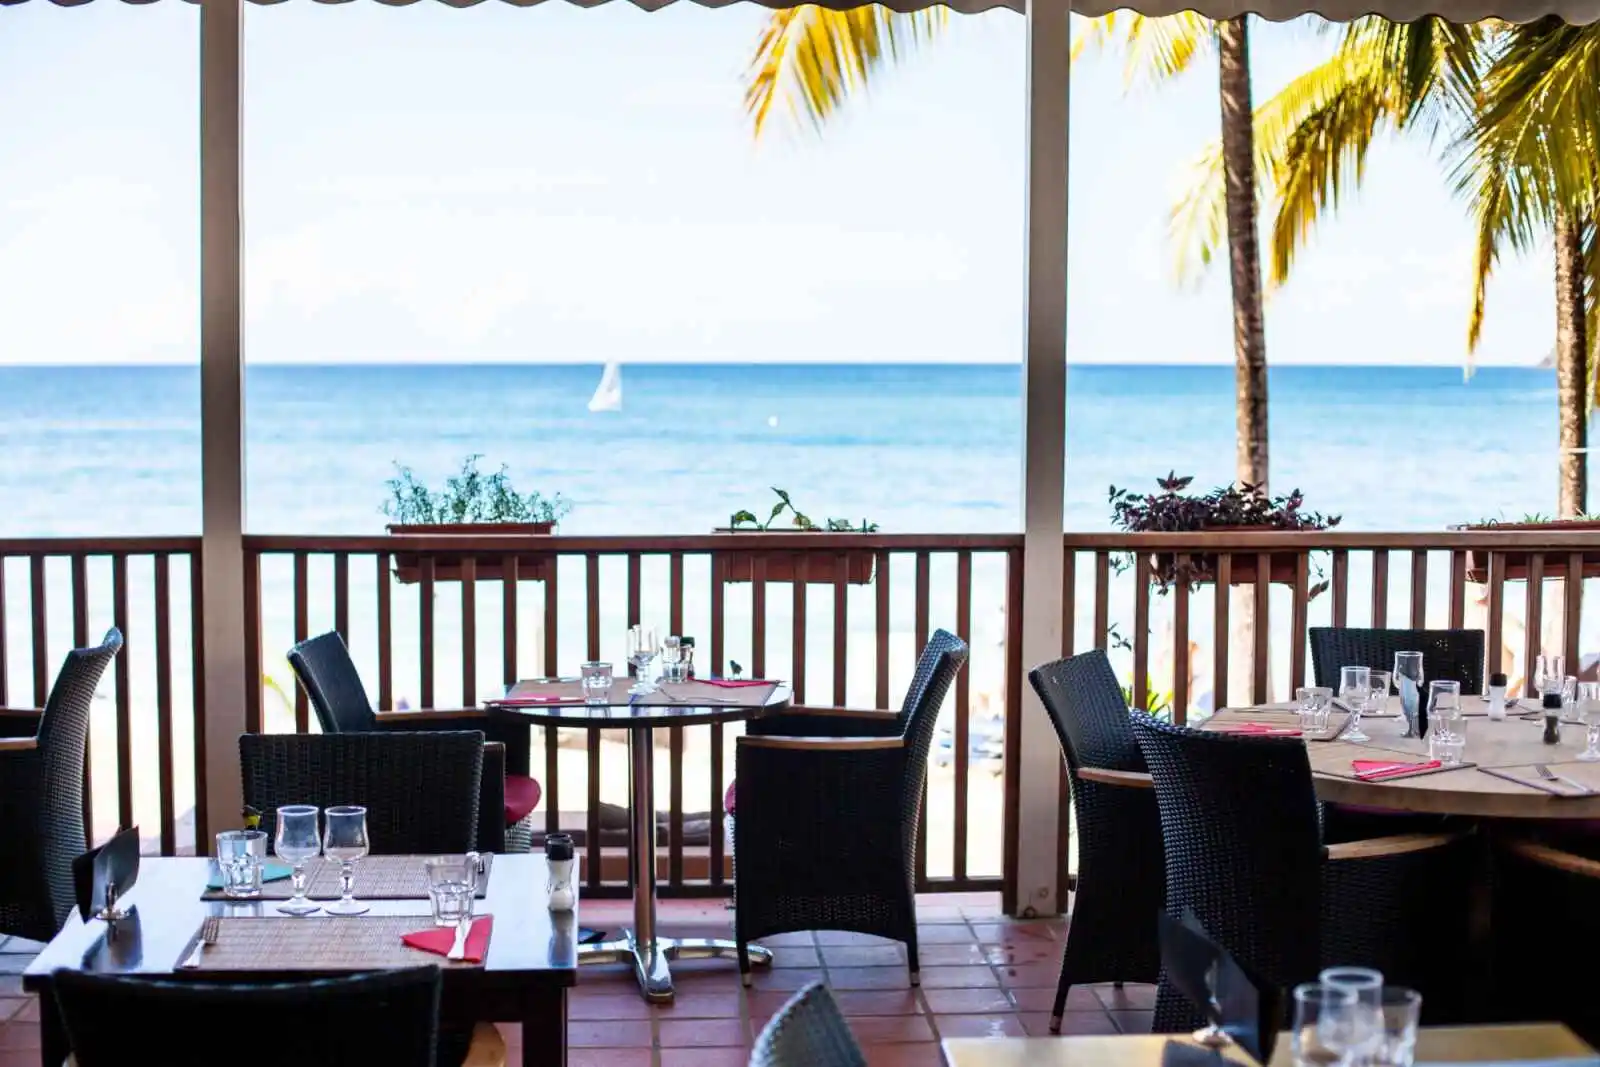 Le Royal restaurant, Hôtel Langley Resort Fort Royal, Deshaies, Guadeloupe